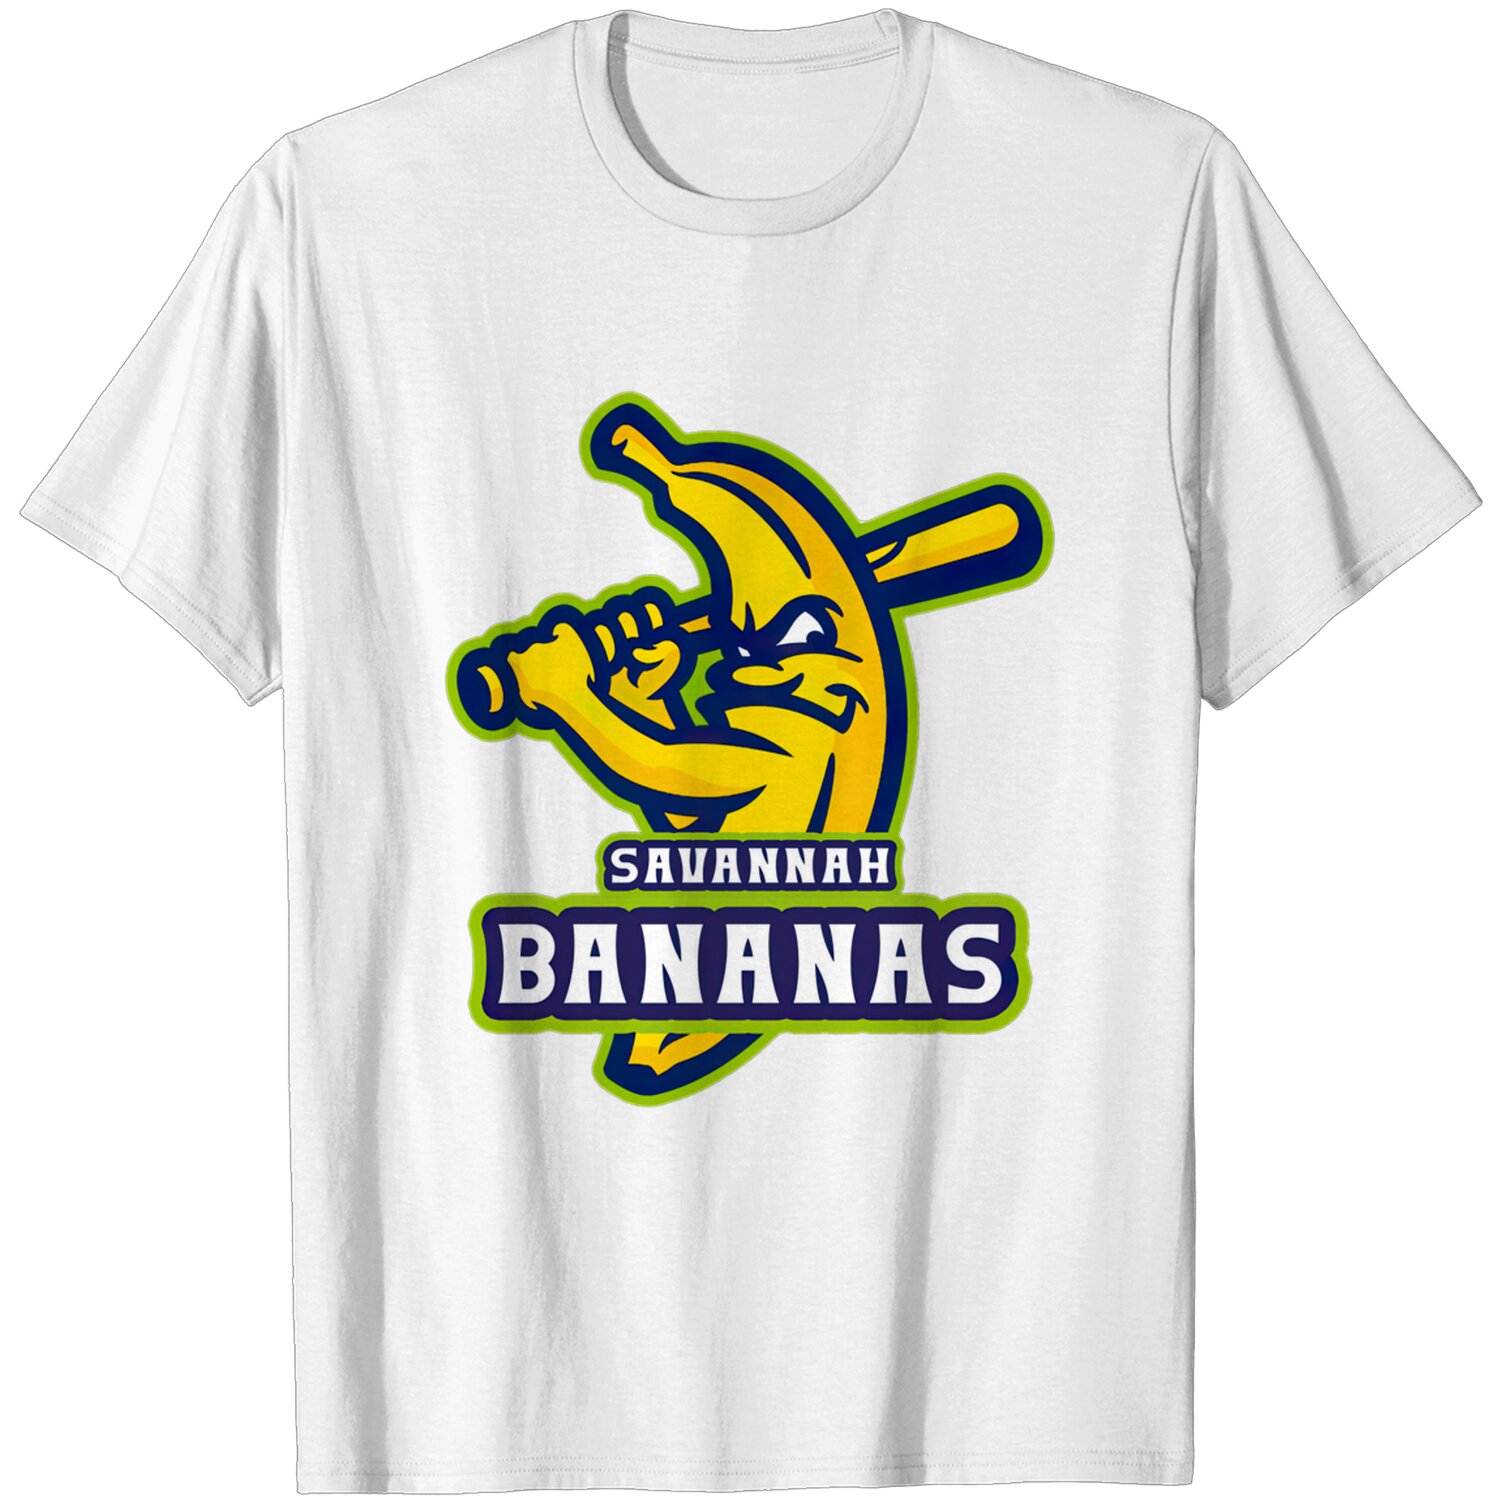 Bananas team - SAVANNAH BANANAS T-Shirt - Printiment